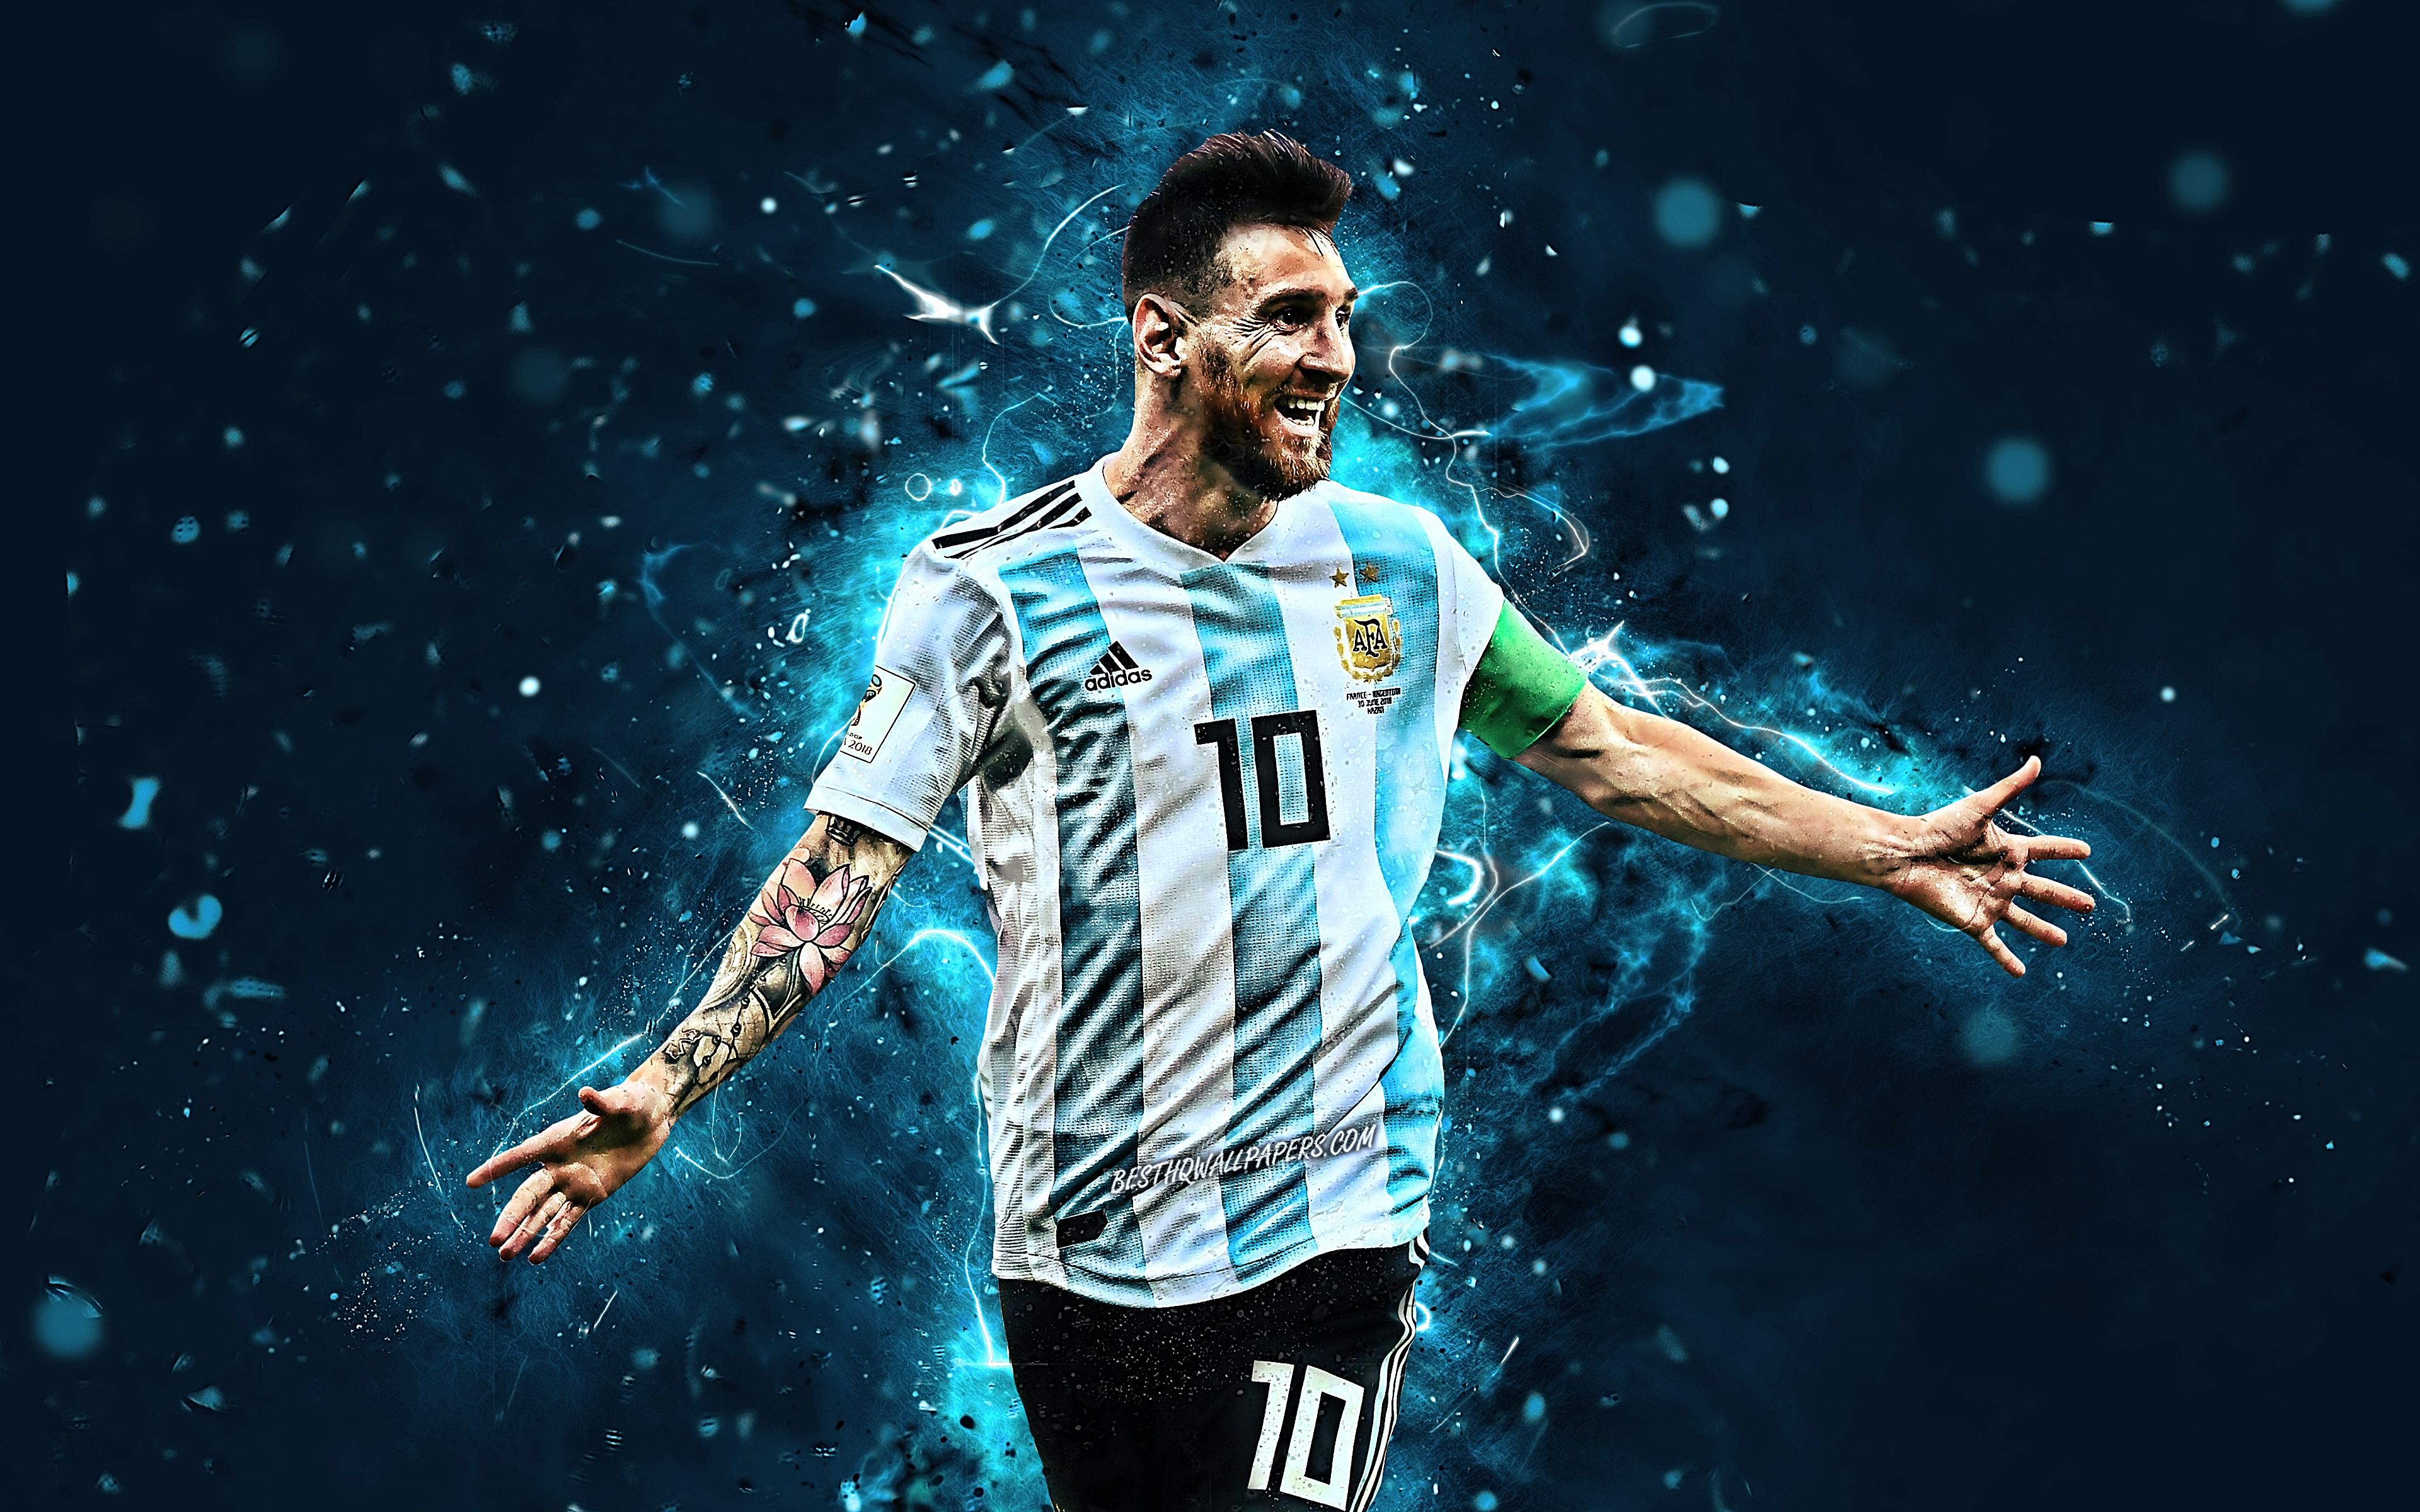 Bộ Sưu Tập Hình Nền Messi Argentina Chất Lượng Cao Cực Đỉnh Full 4K Với Hơn  999 Tấm Hình  TH Điện Biên Đông